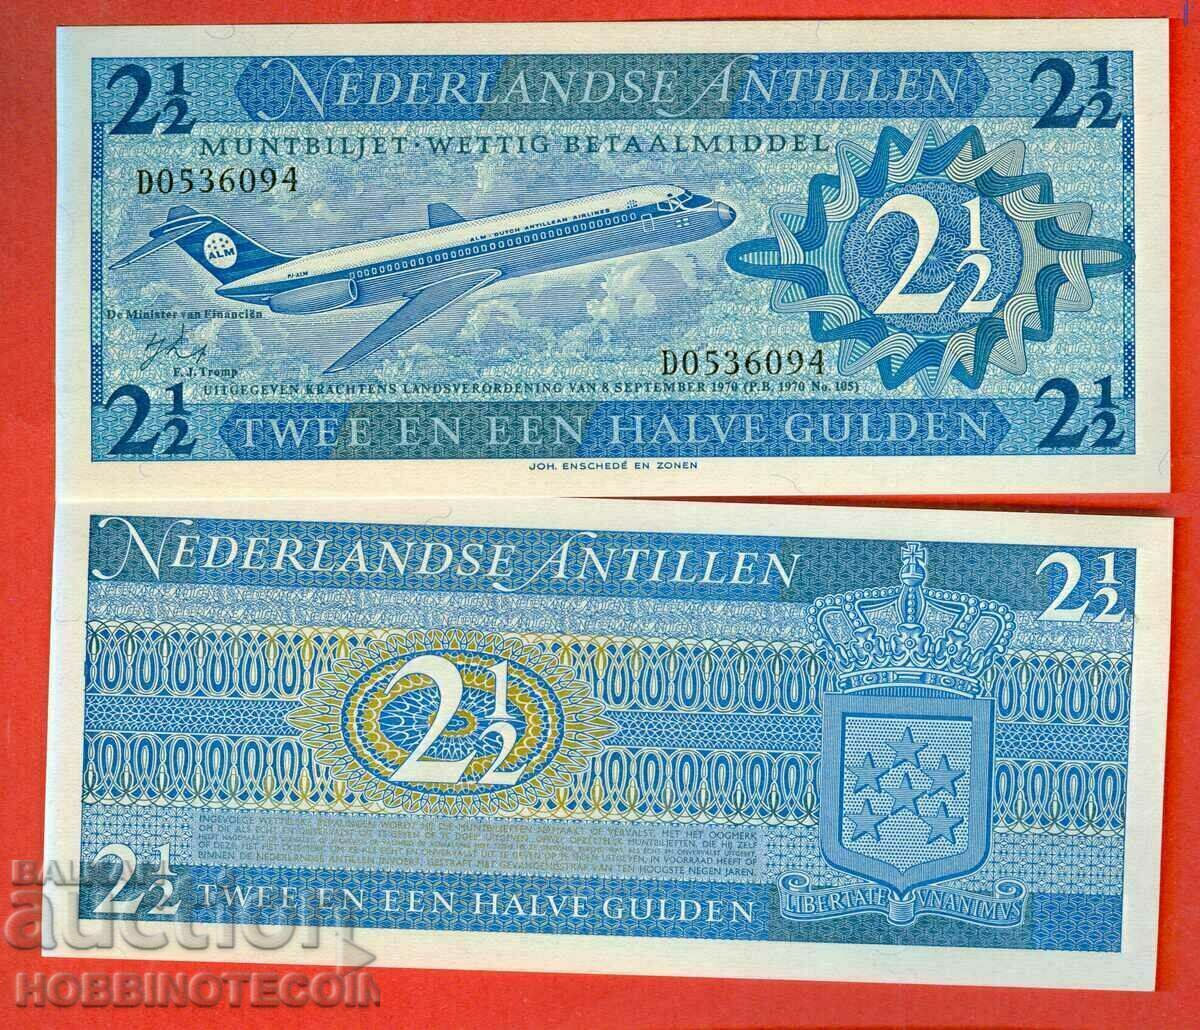 NETHERLANDS ANTILLES - 2.5 Gulden issue issue 1970 NEW UNC